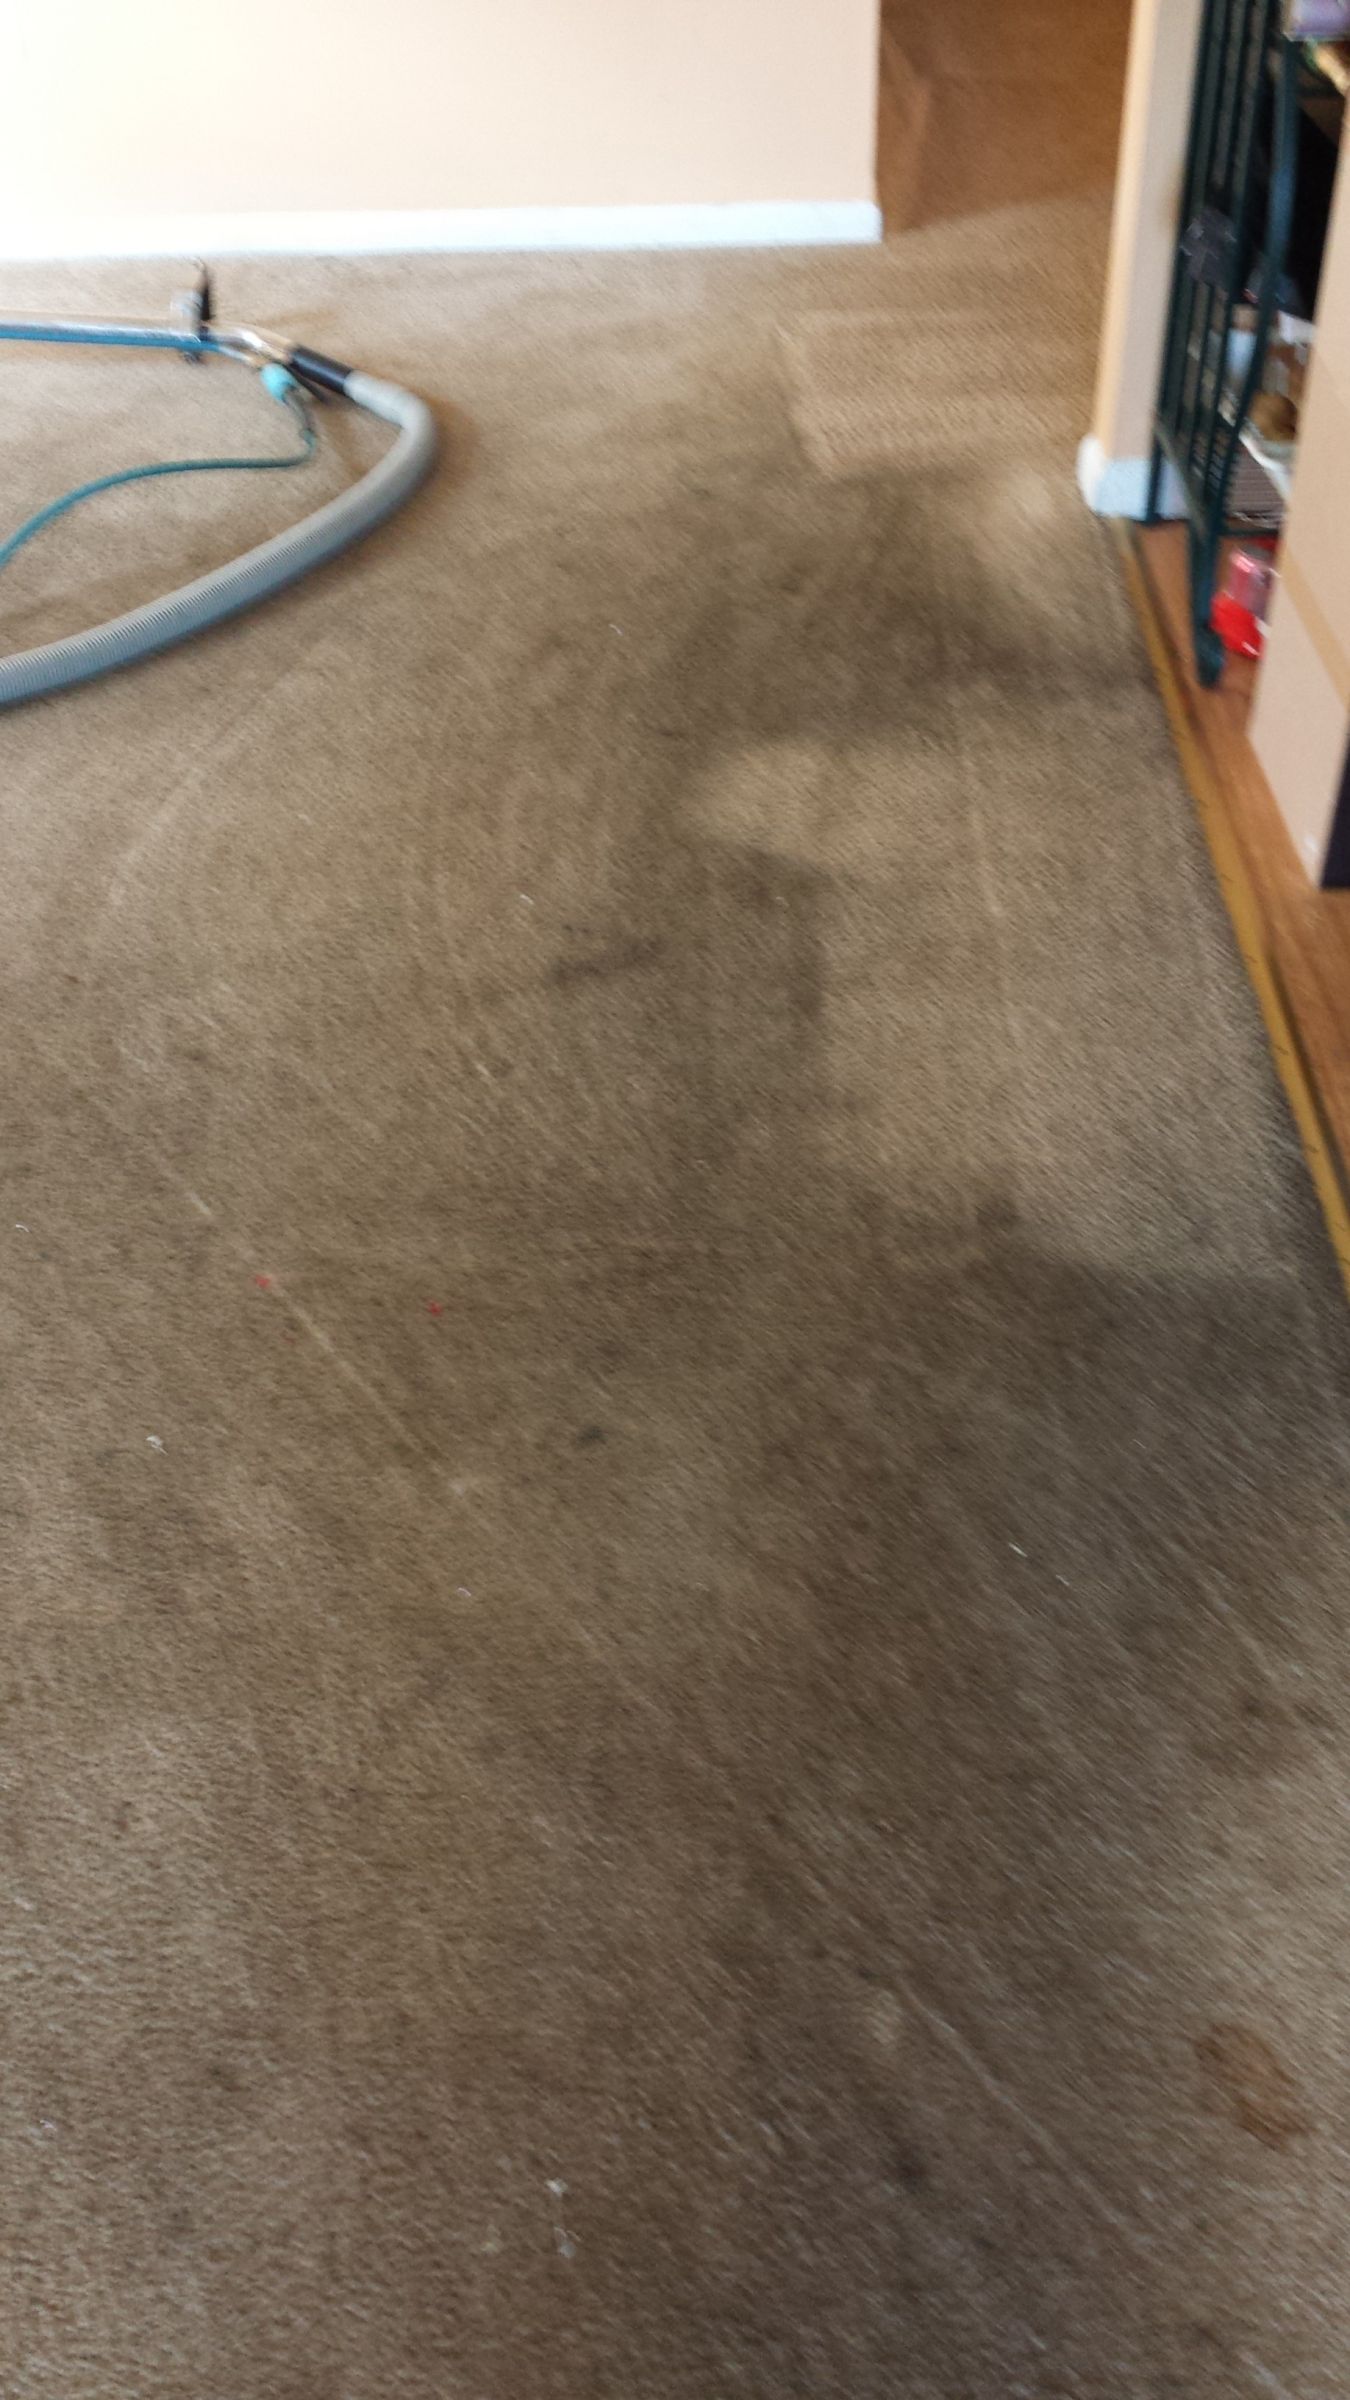 Premium Carpet Cleaning In Moorestown